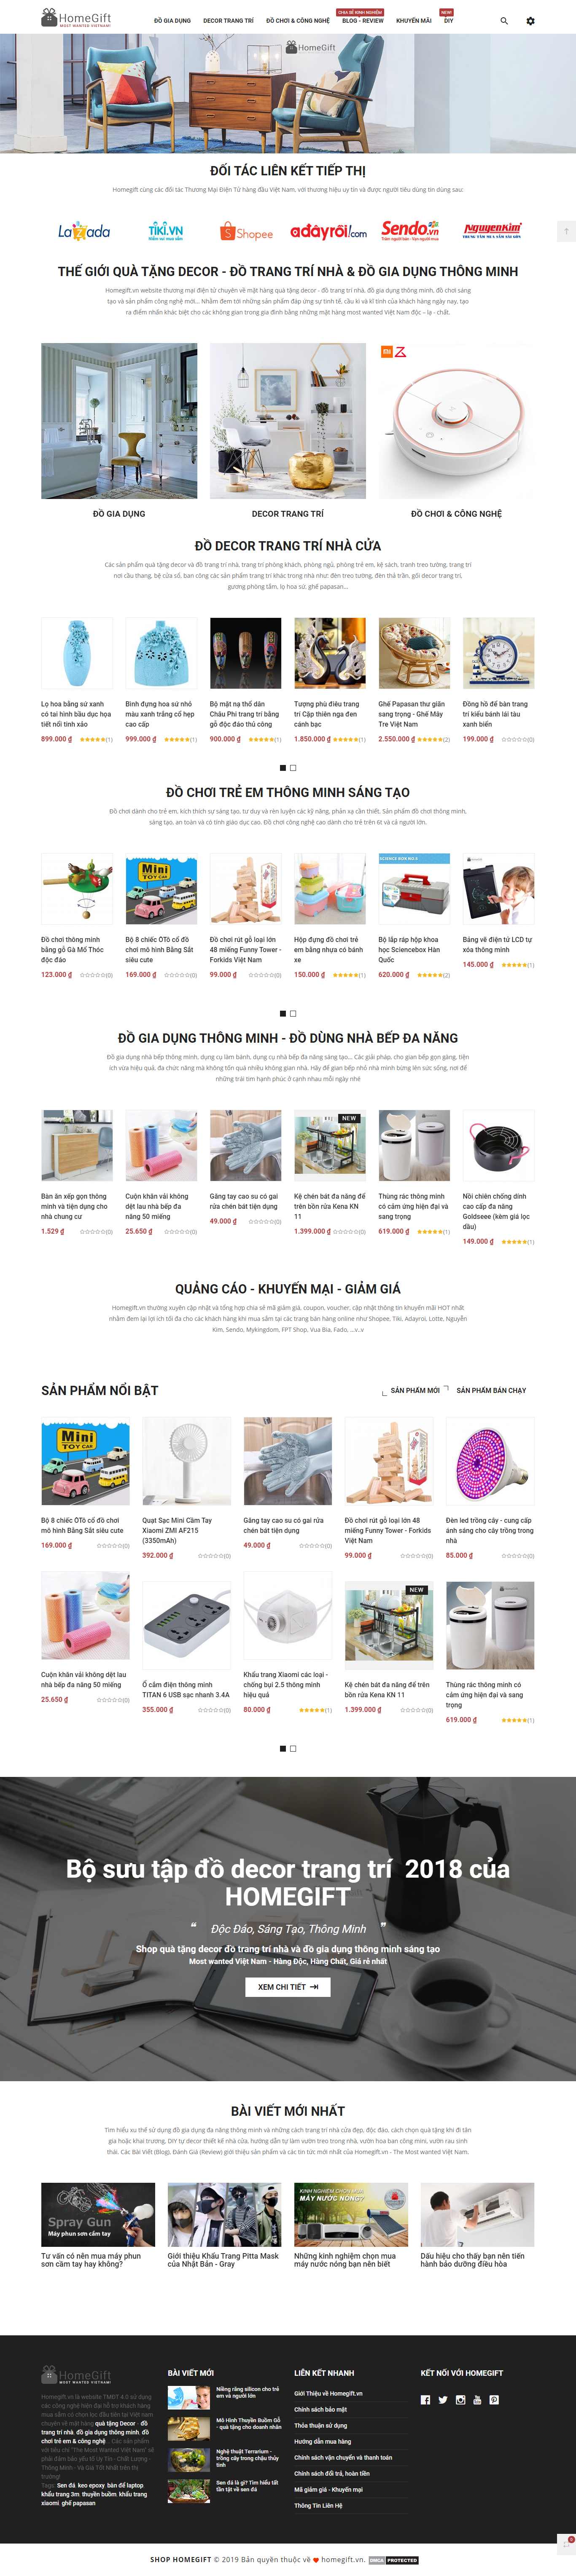 Thiết kế Website shop quà tặng - homegift.vn